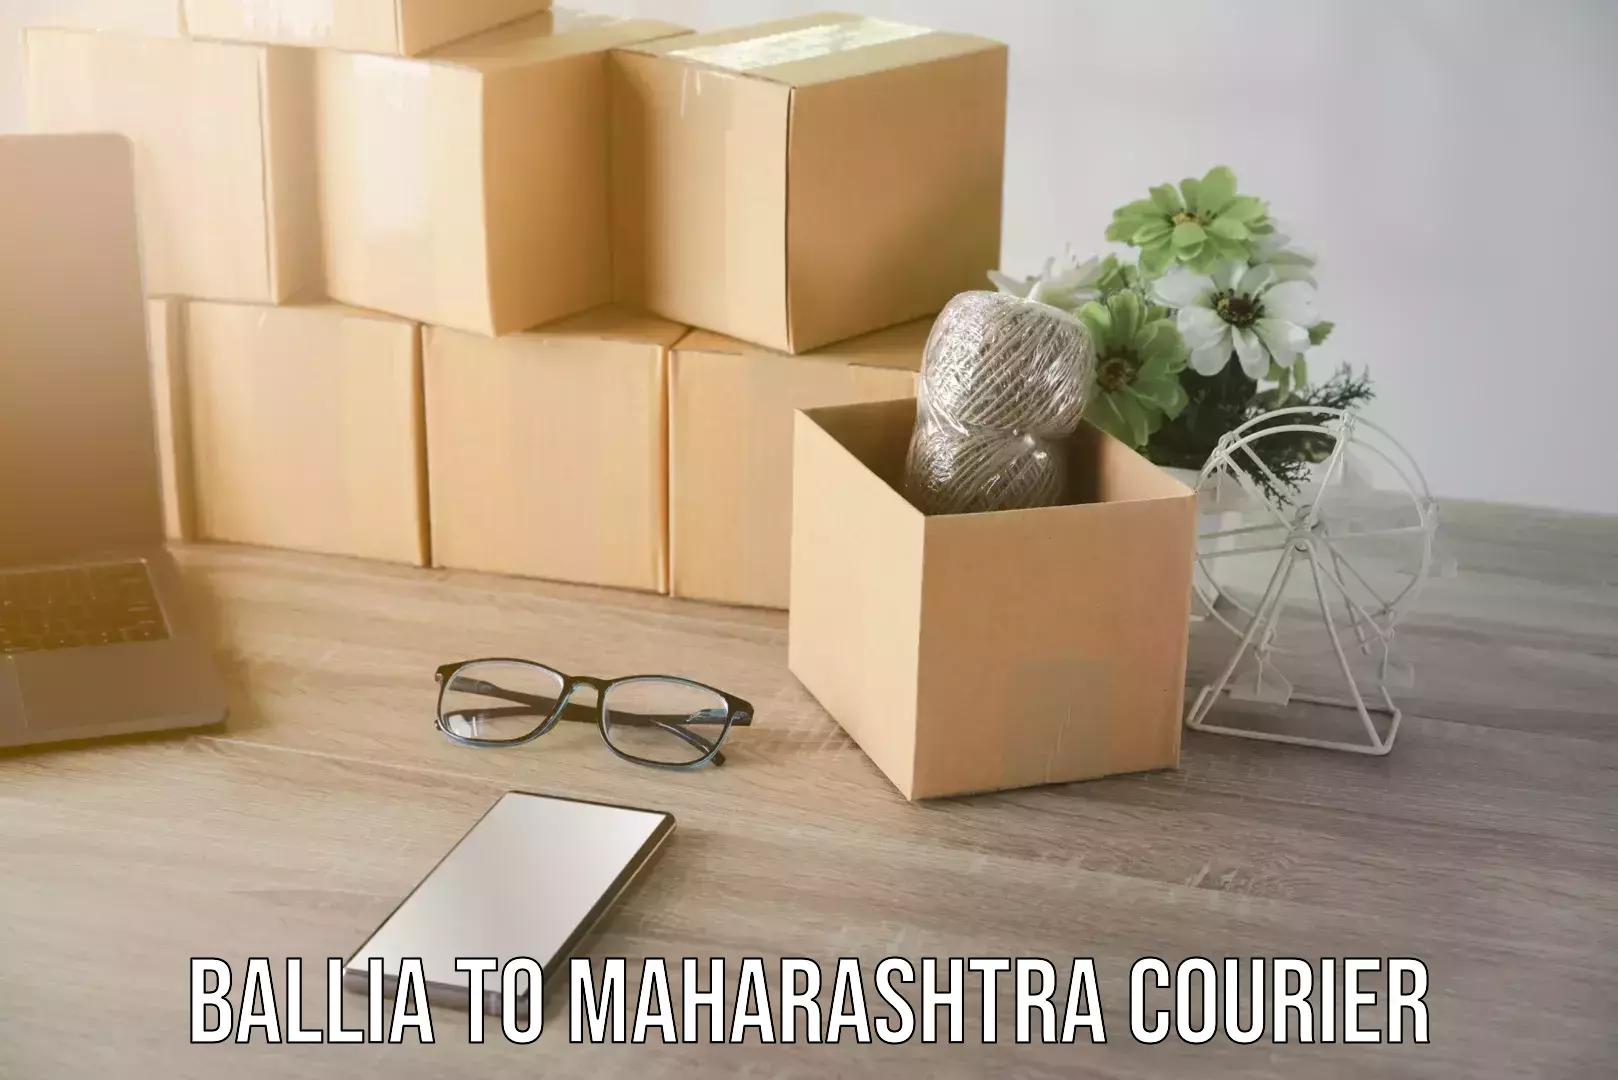 Express delivery capabilities in Ballia to Maharashtra